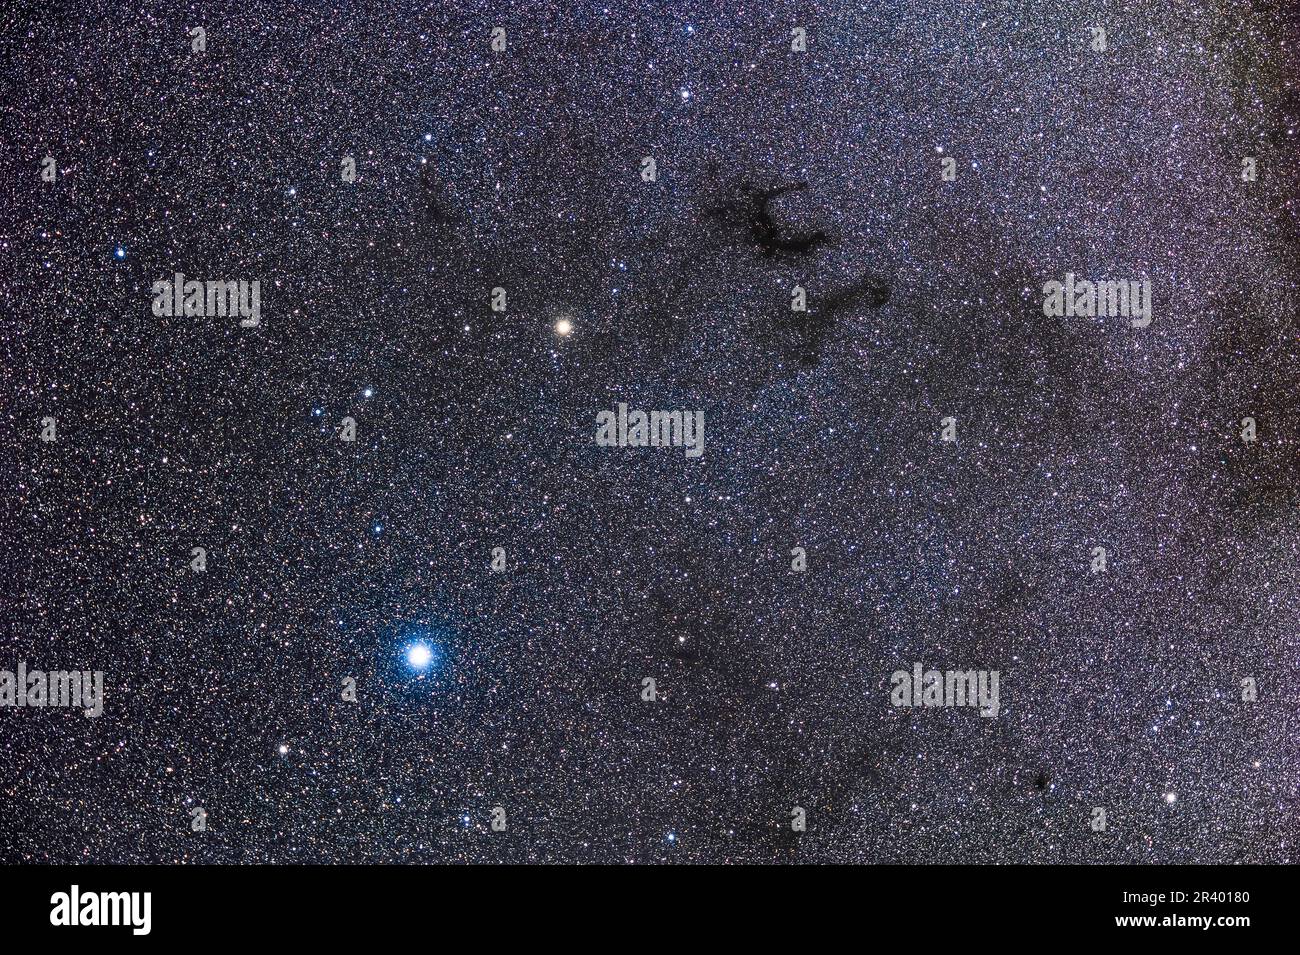 Le complexe nébuleuse sombre connu sous le nom de Barnard's E près des étoiles Altair et Tarazed. Banque D'Images